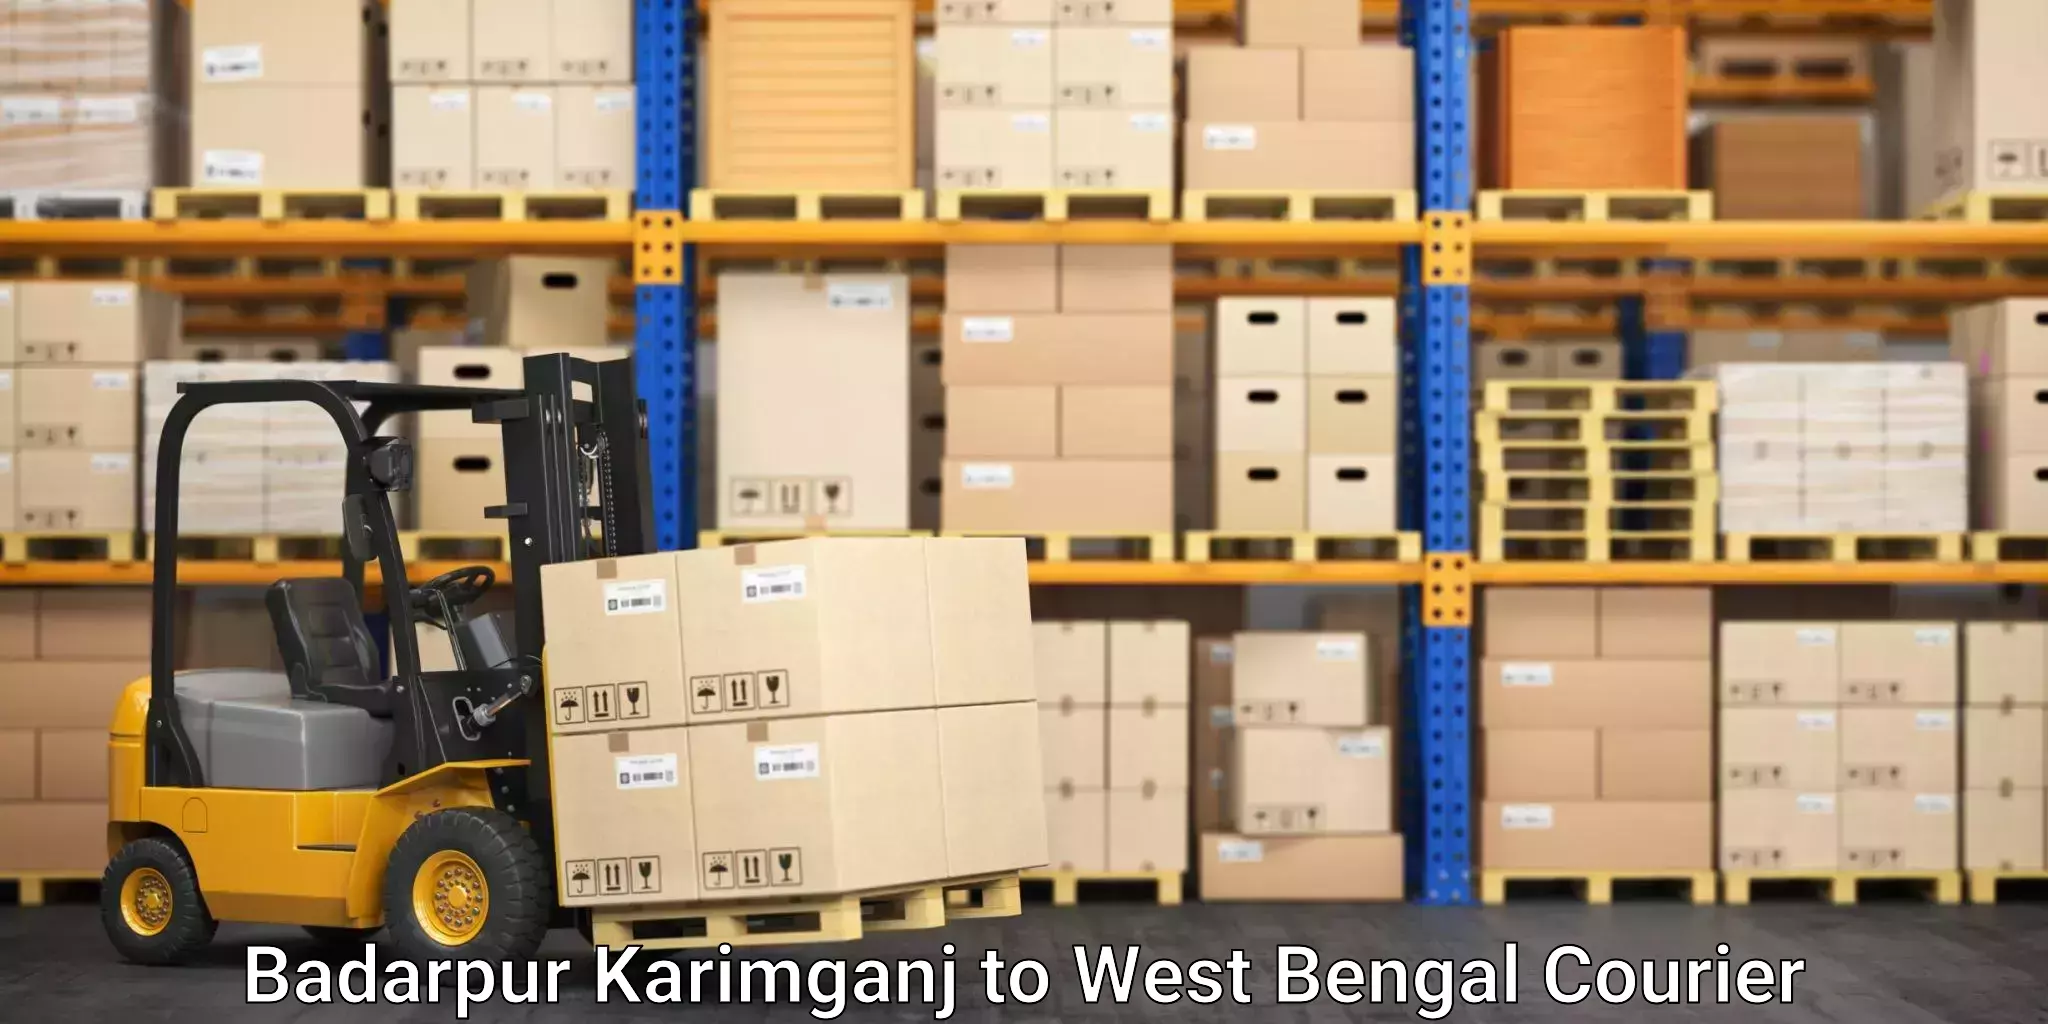 Fast-track shipping solutions Badarpur Karimganj to Tribeni